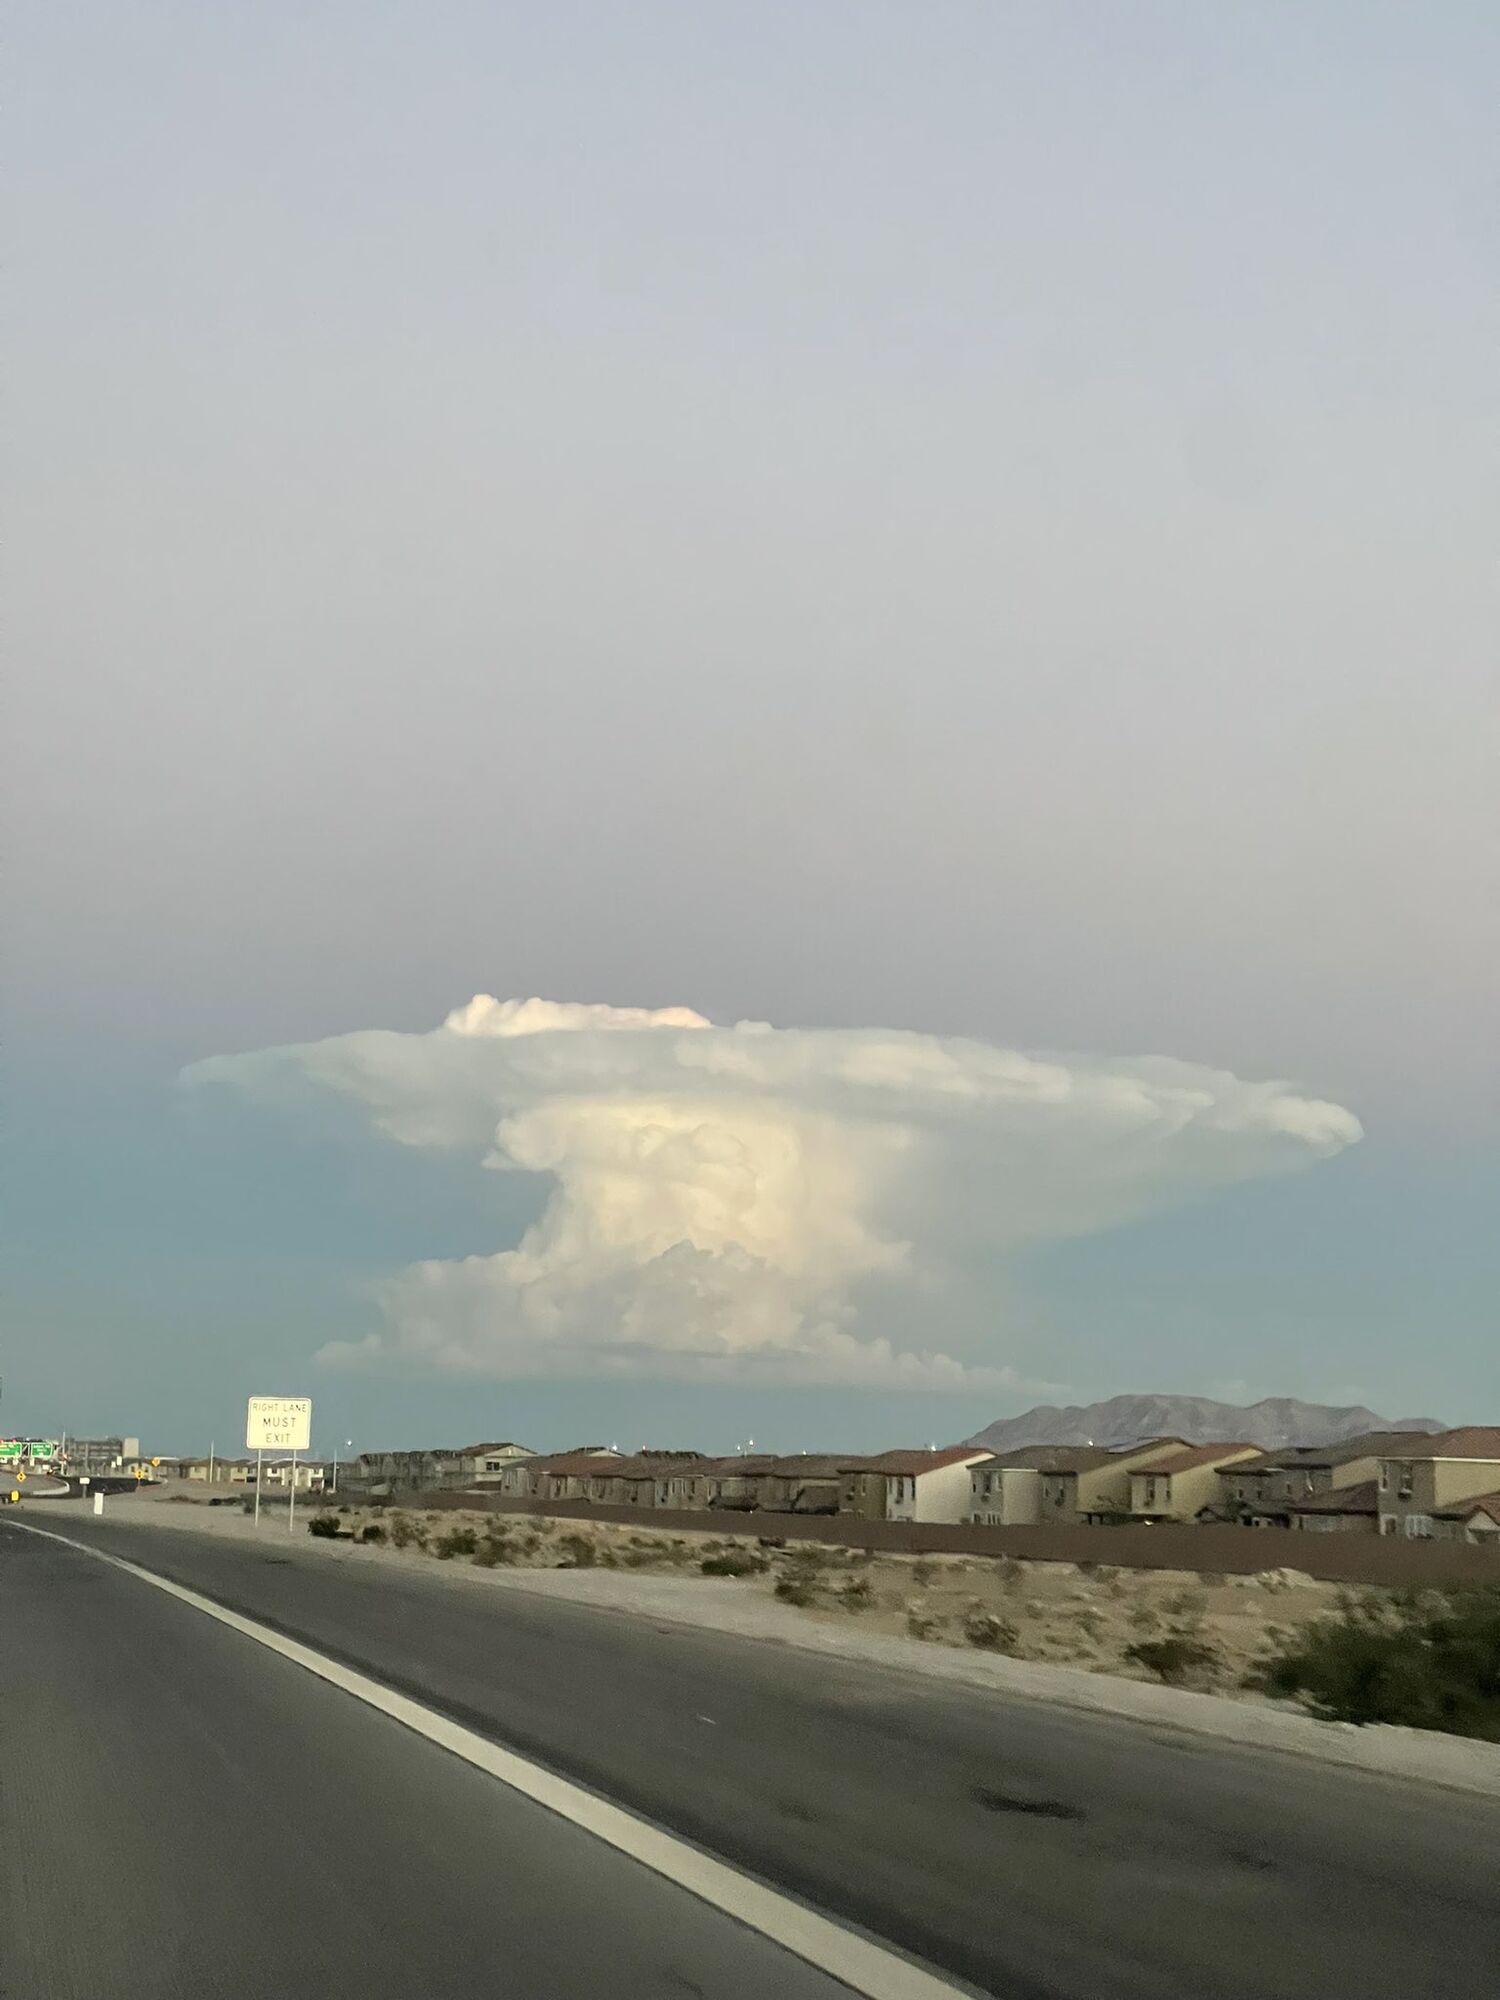  У Лас-Вегасі хмара у вигляді "ядерного гриба" налякала містян. Фото